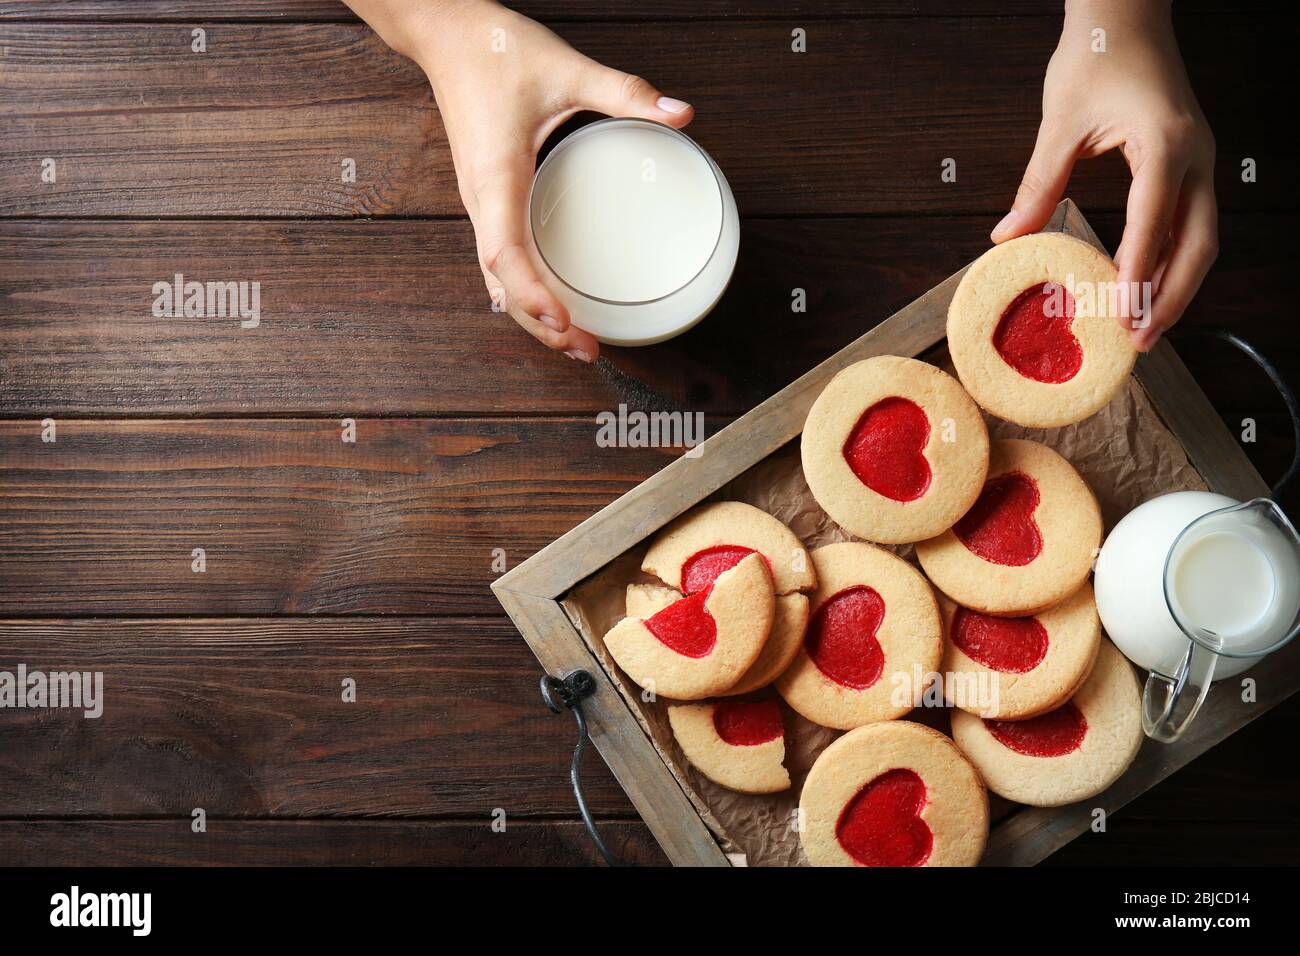 Mains féminines avec lait et biscuits sur table en bois, vue de dessus Banque D'Images